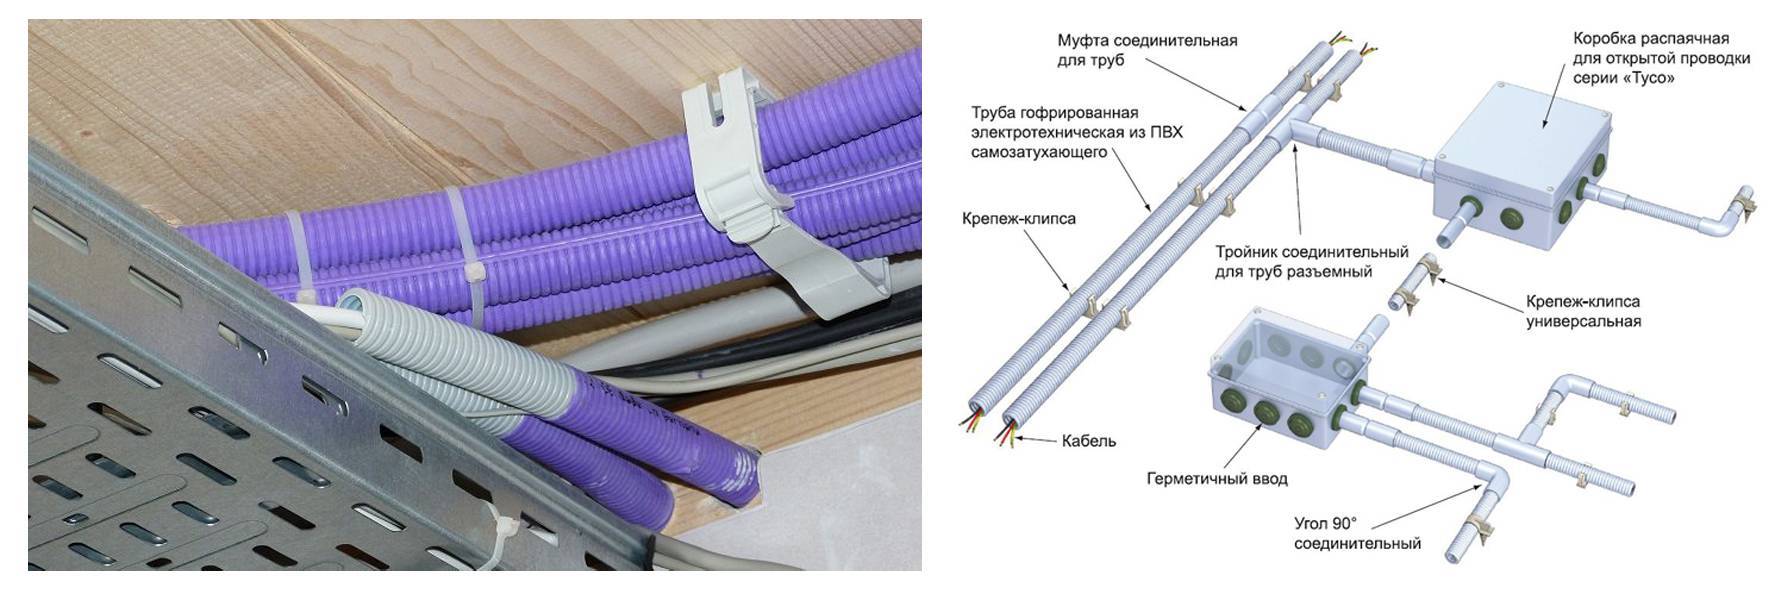 Правила и особенности прокладки электрических кабелей в трубах